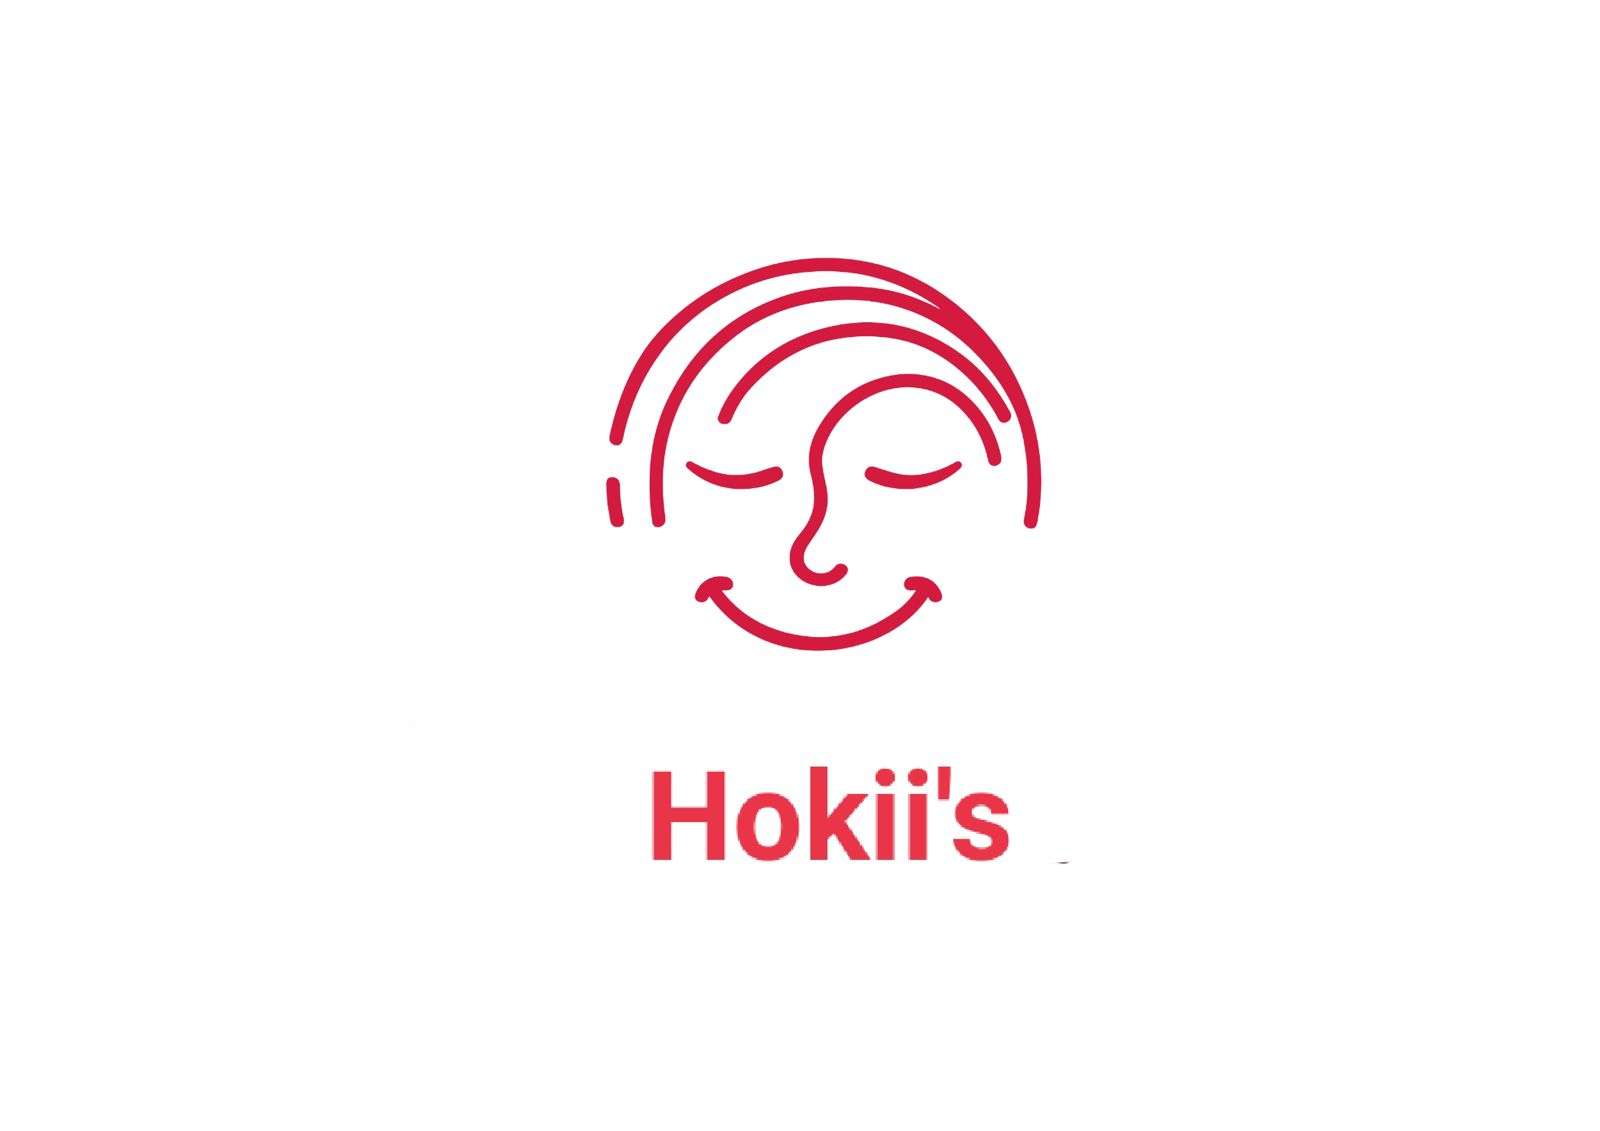 Hokii's